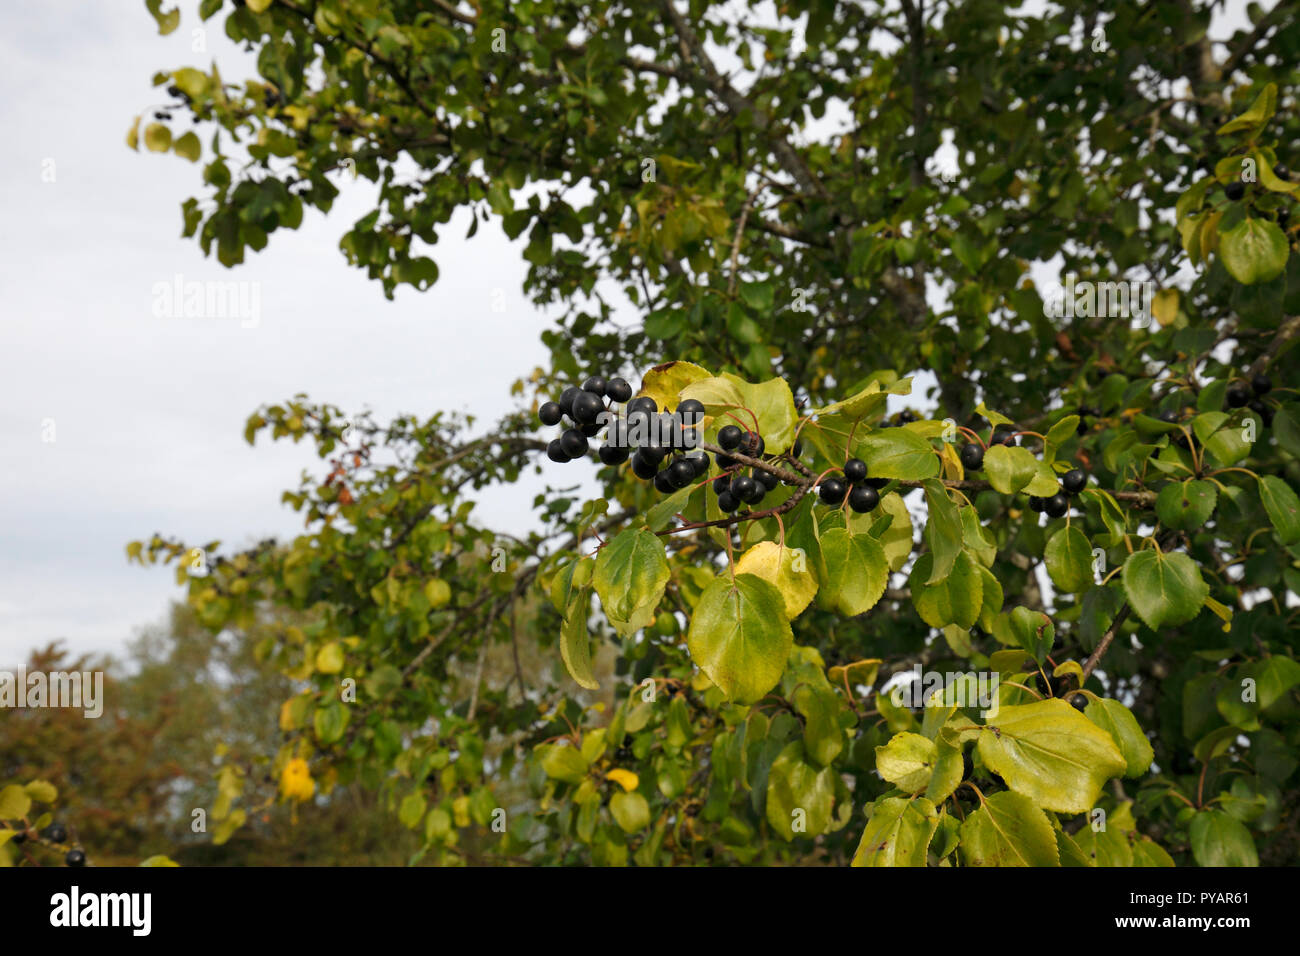 Lo spurgo frangola, comune frangola, frangola. Nome scientifico: Rhamnus cathartica Famiglia: Rhamnaceae. Nativo di albero del Regno Unito. La fruttificazione in autunno. Foto Stock